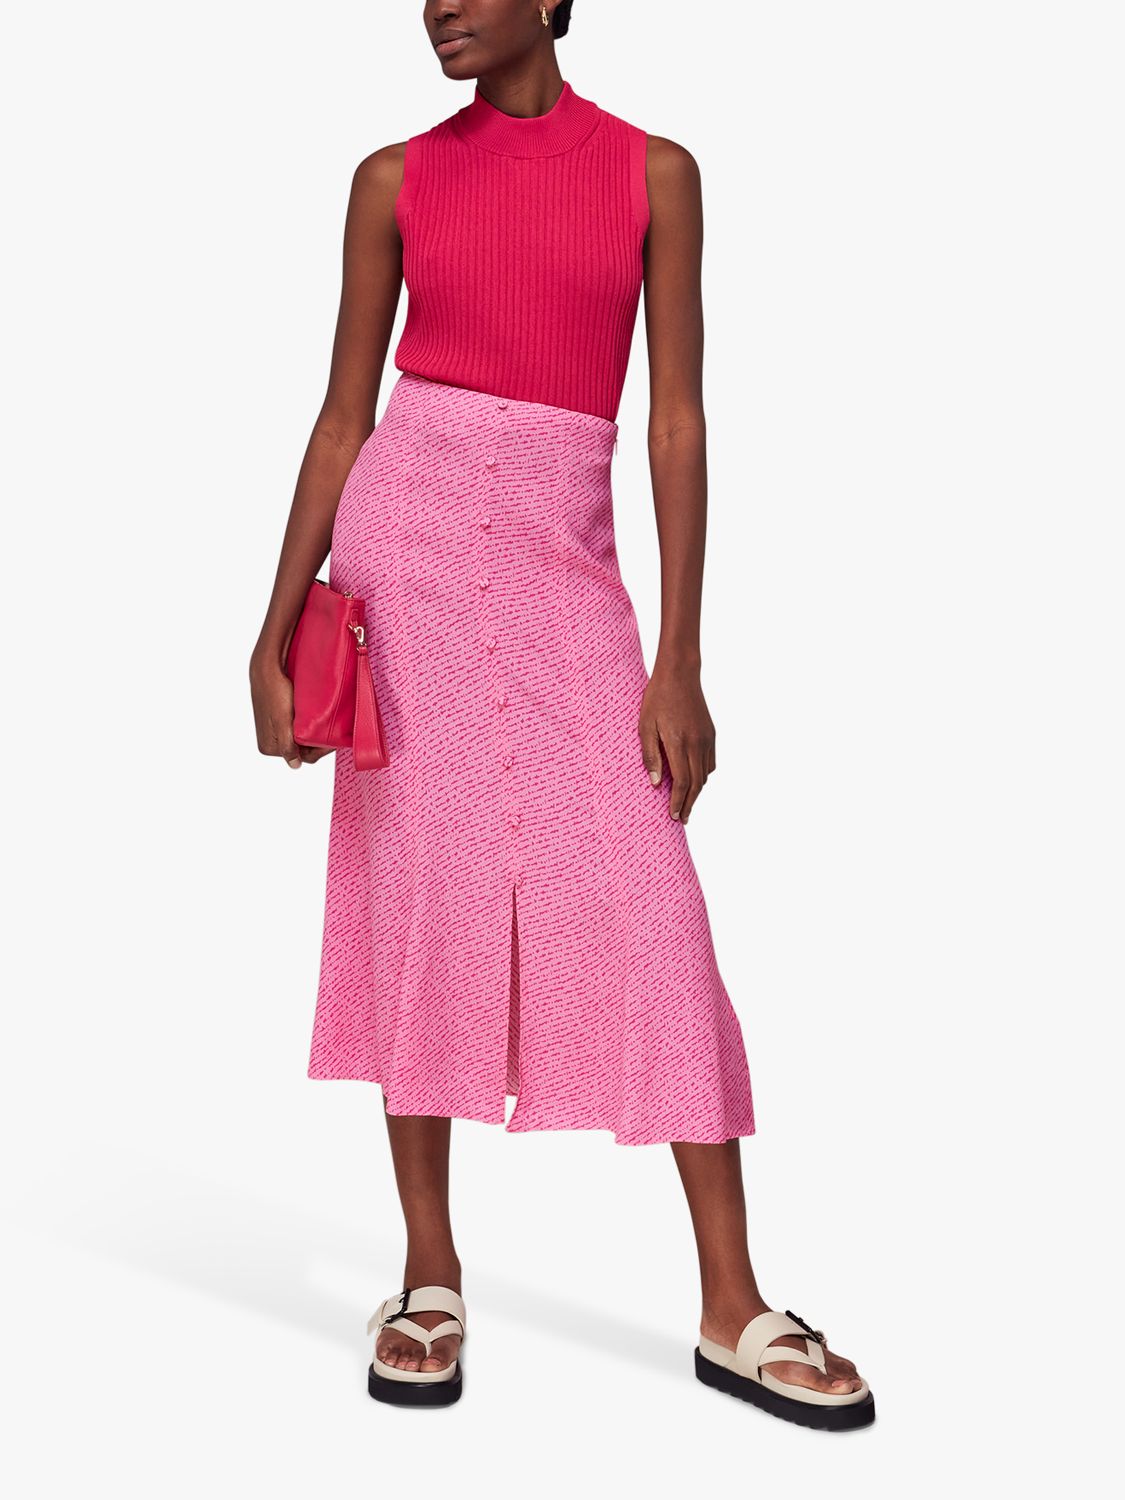 Whistles Diagonal Fleck Button Midi Skirt, Pink/Multi, 6